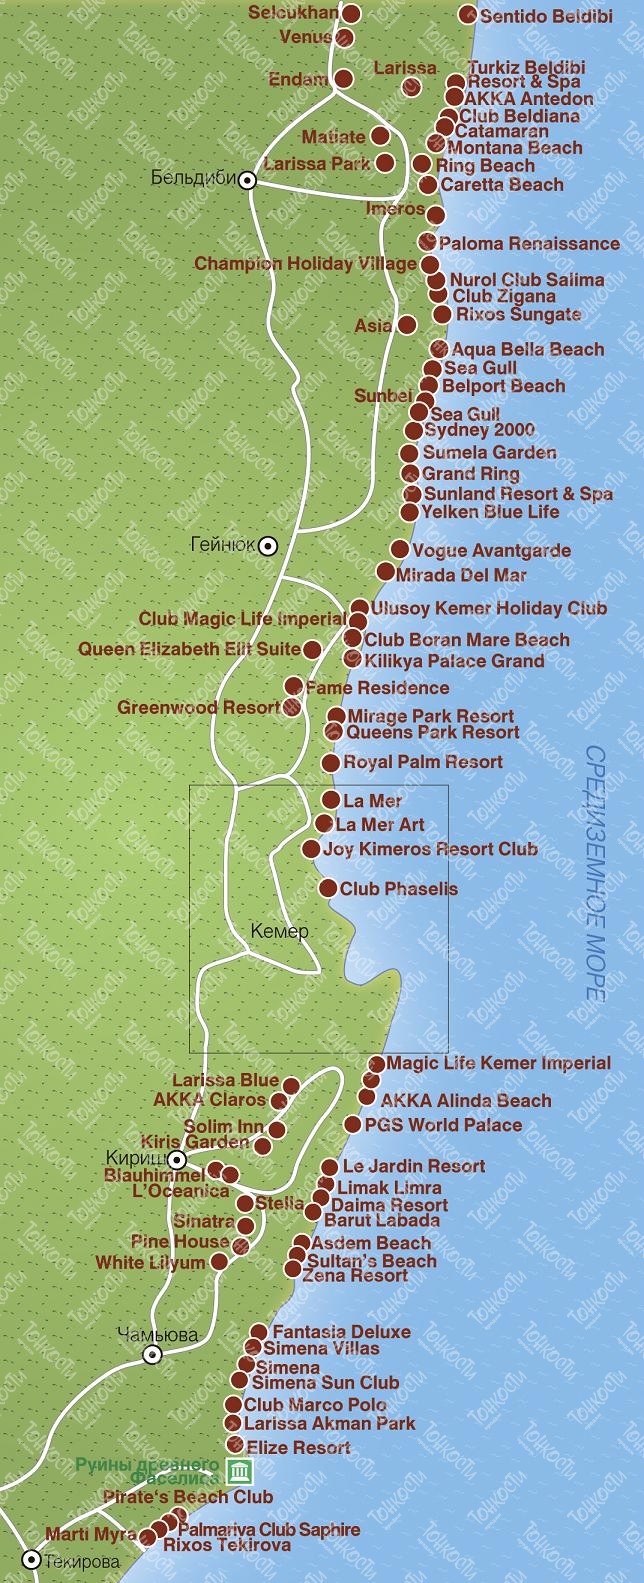 Бельдиби - курорт в турции 2023: история, на карте, как добраться, отели, пляжи, отзывы